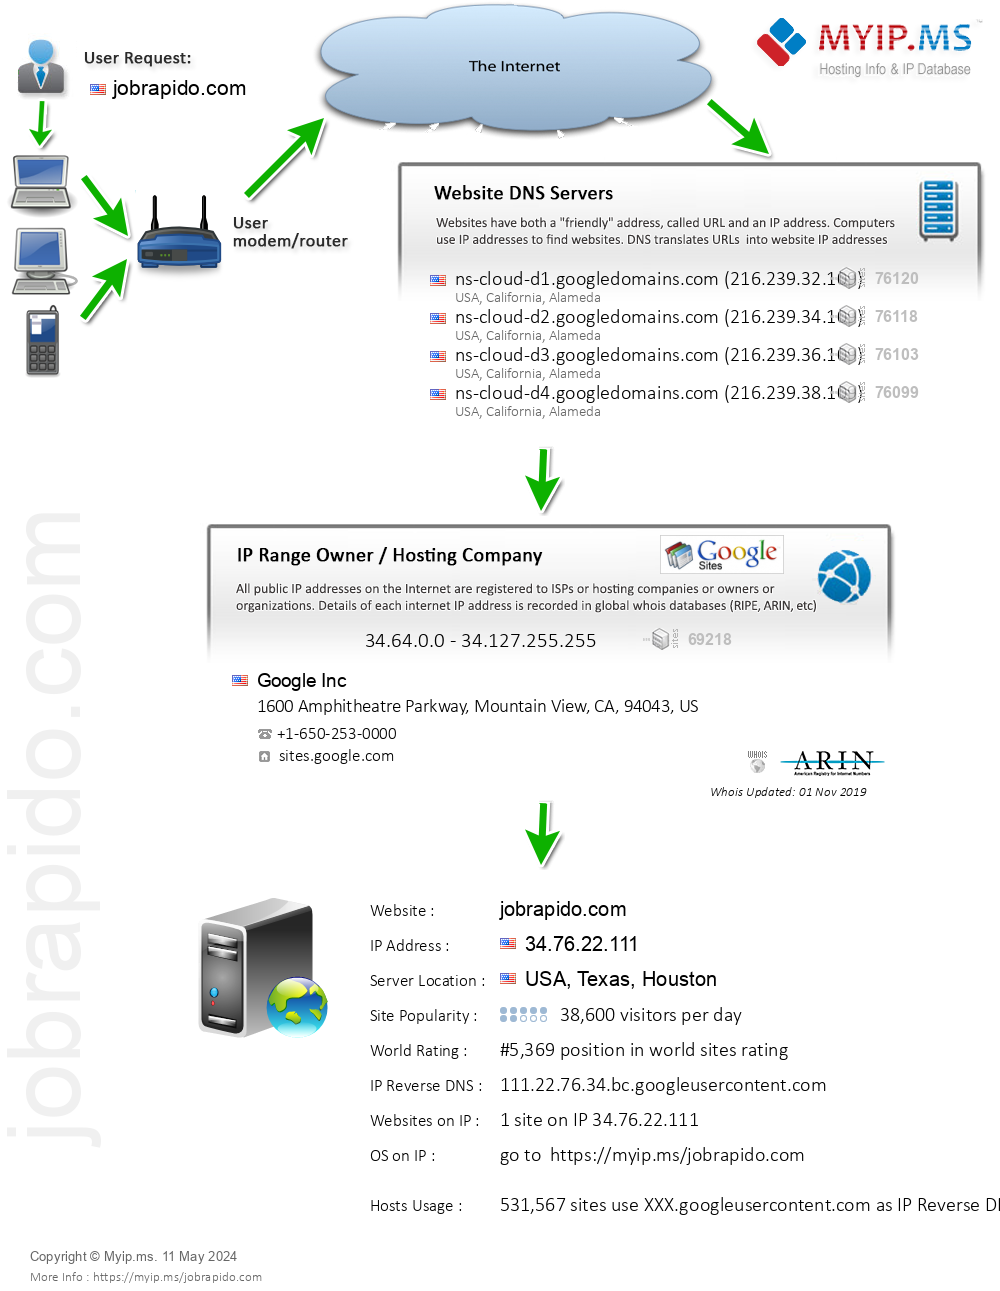 Jobrapido.com - Website Hosting Visual IP Diagram